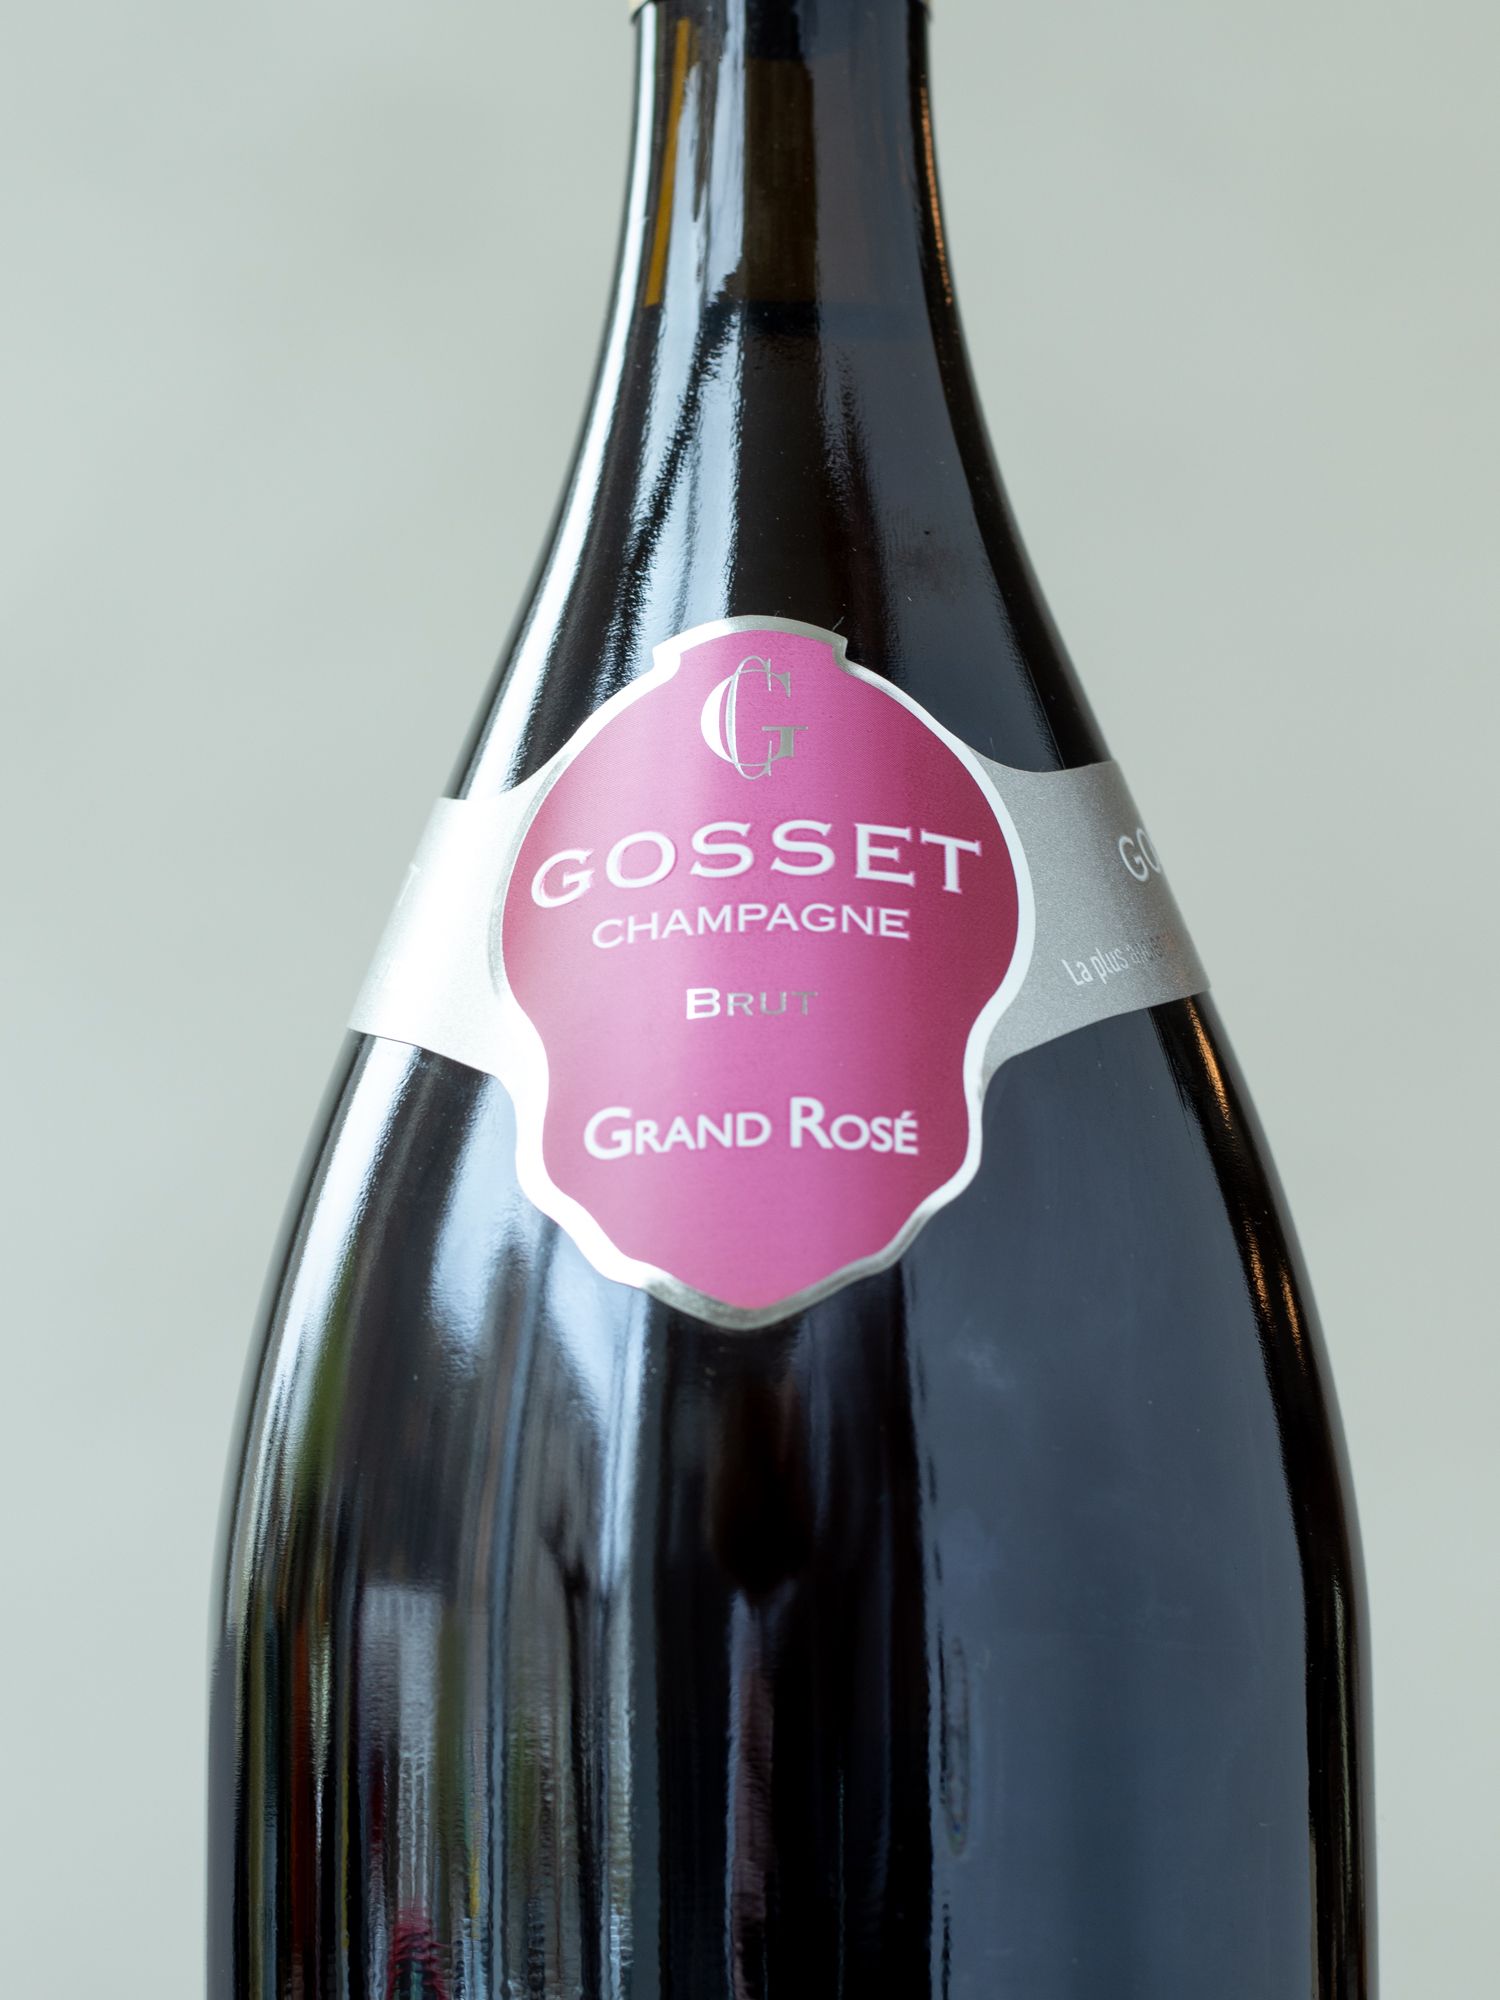 Шампанское Gosset Brut Grand Rose / Госсе Брют Гран Розе